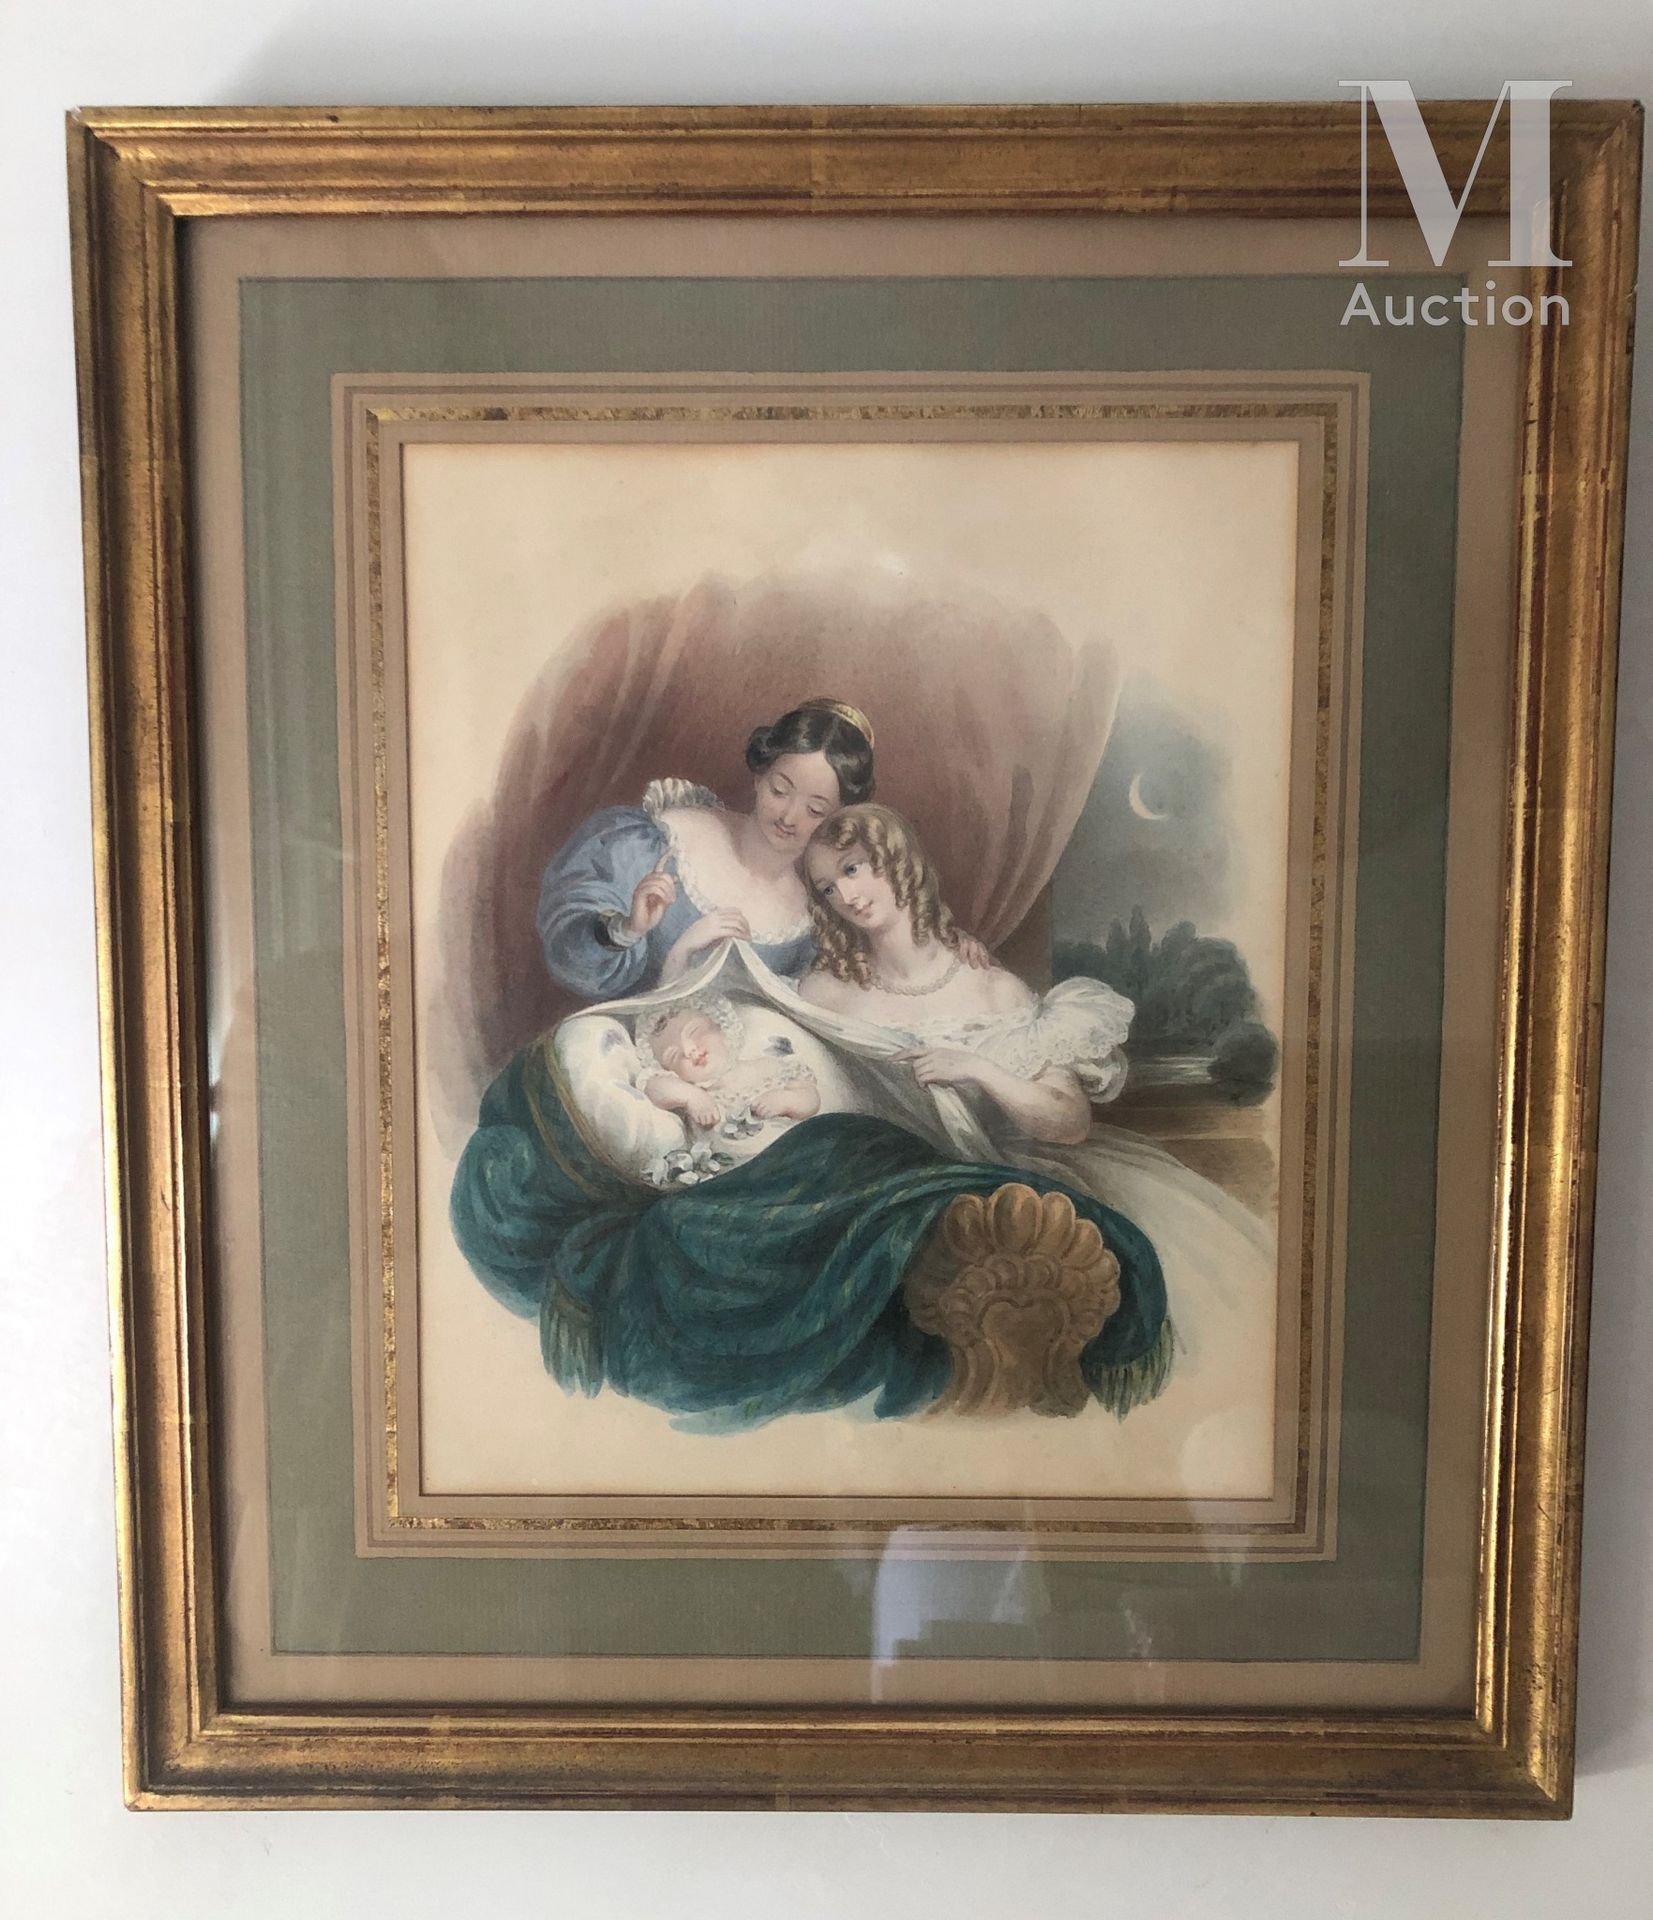 ECOLE FRANCAISE DU XIXème siècle Escena de maternidad

Acuarela 

23,5 x 19 cm.